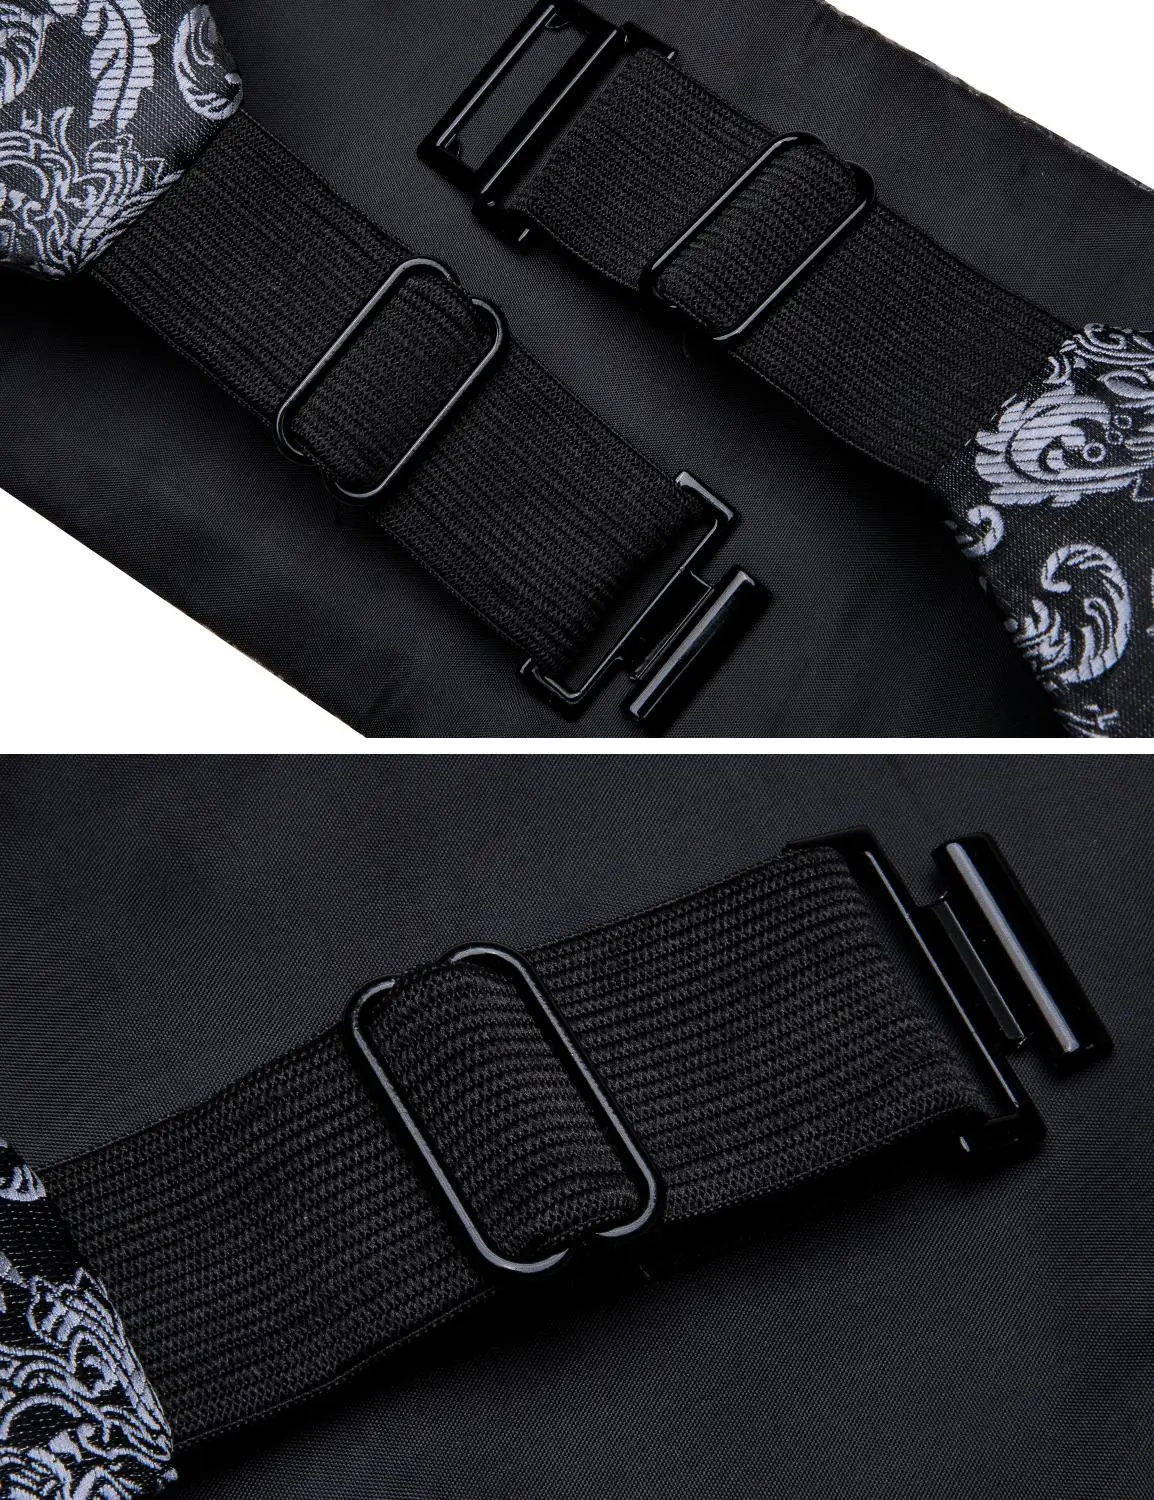 Conjunto de pajarita Floral de seda para hombre, cachemira negra Formal de esmoquin, gemelos cuadrados de bolsillo, accesorios de traje, Barry.Wang B-100